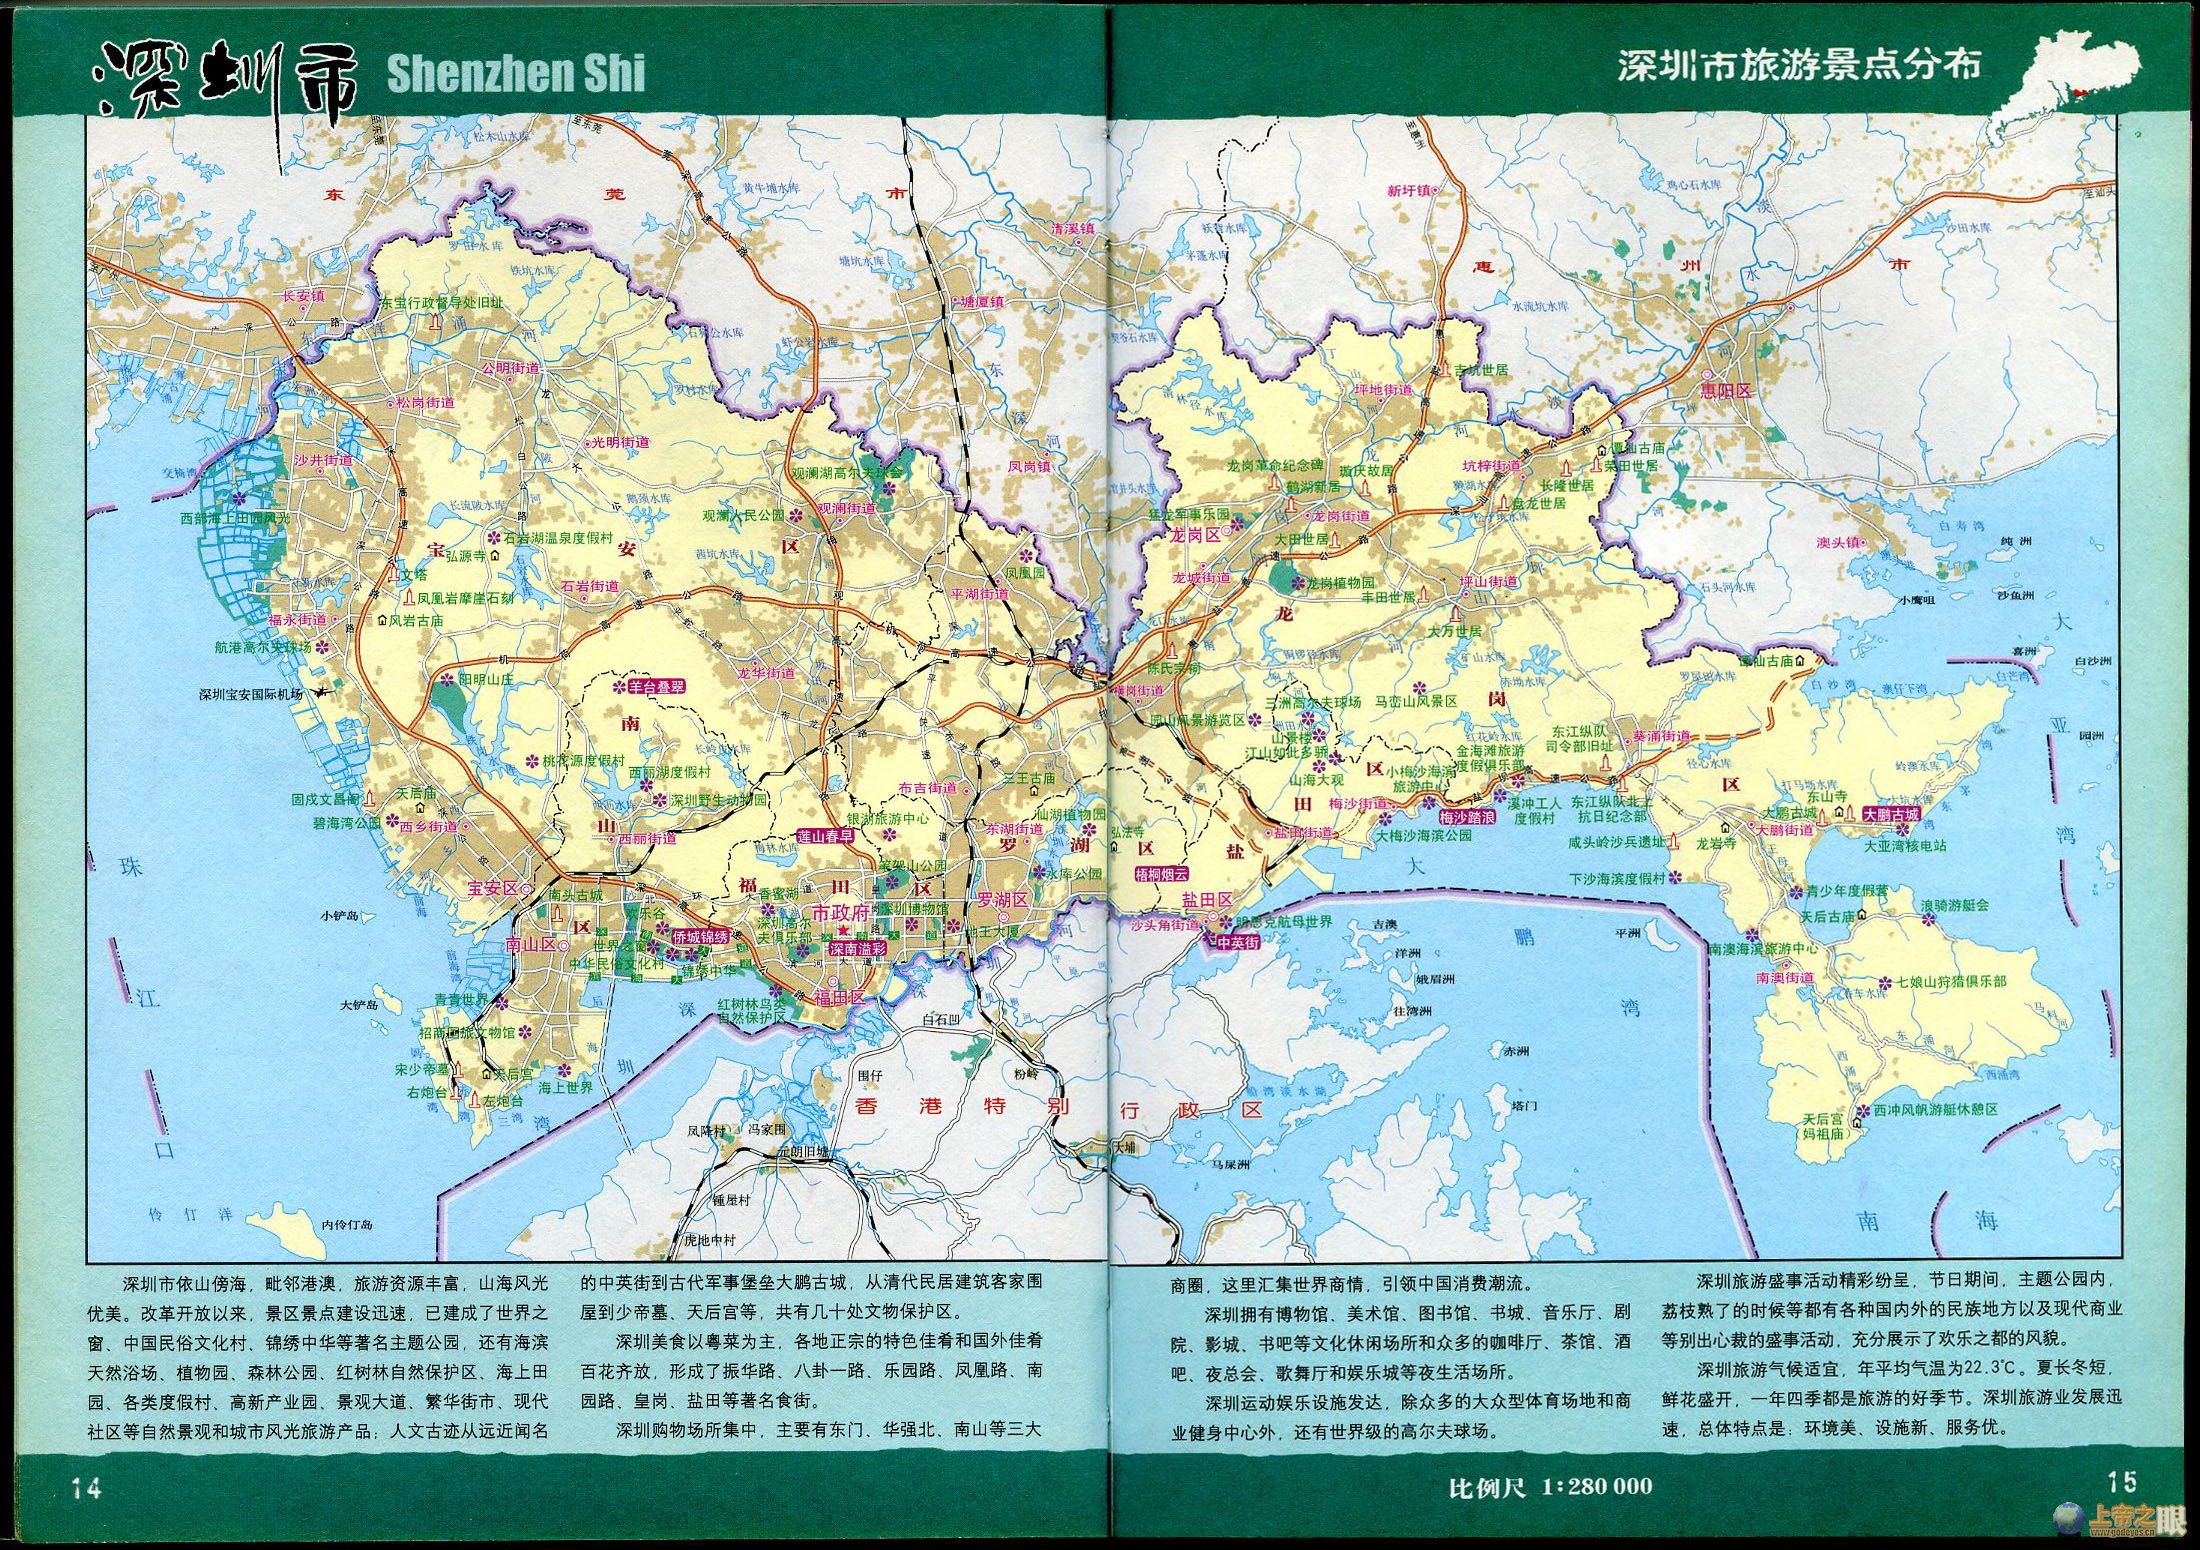 深圳旅游景点分布图_深圳地图库_地图窝图片